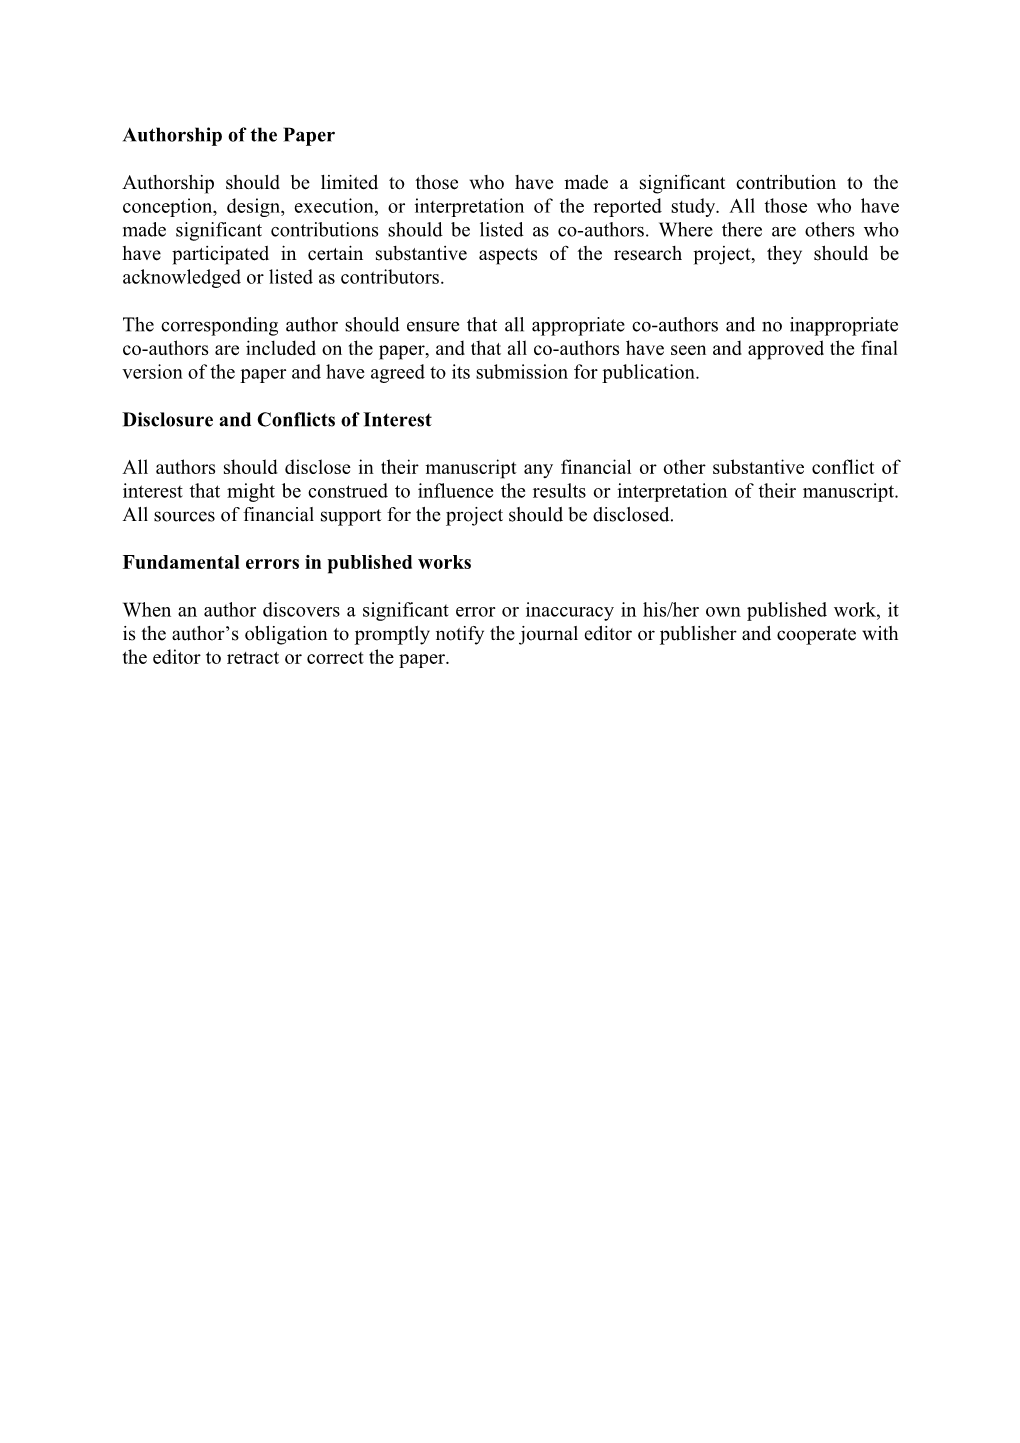 Publication Ethics and Publication Malpractice Statement